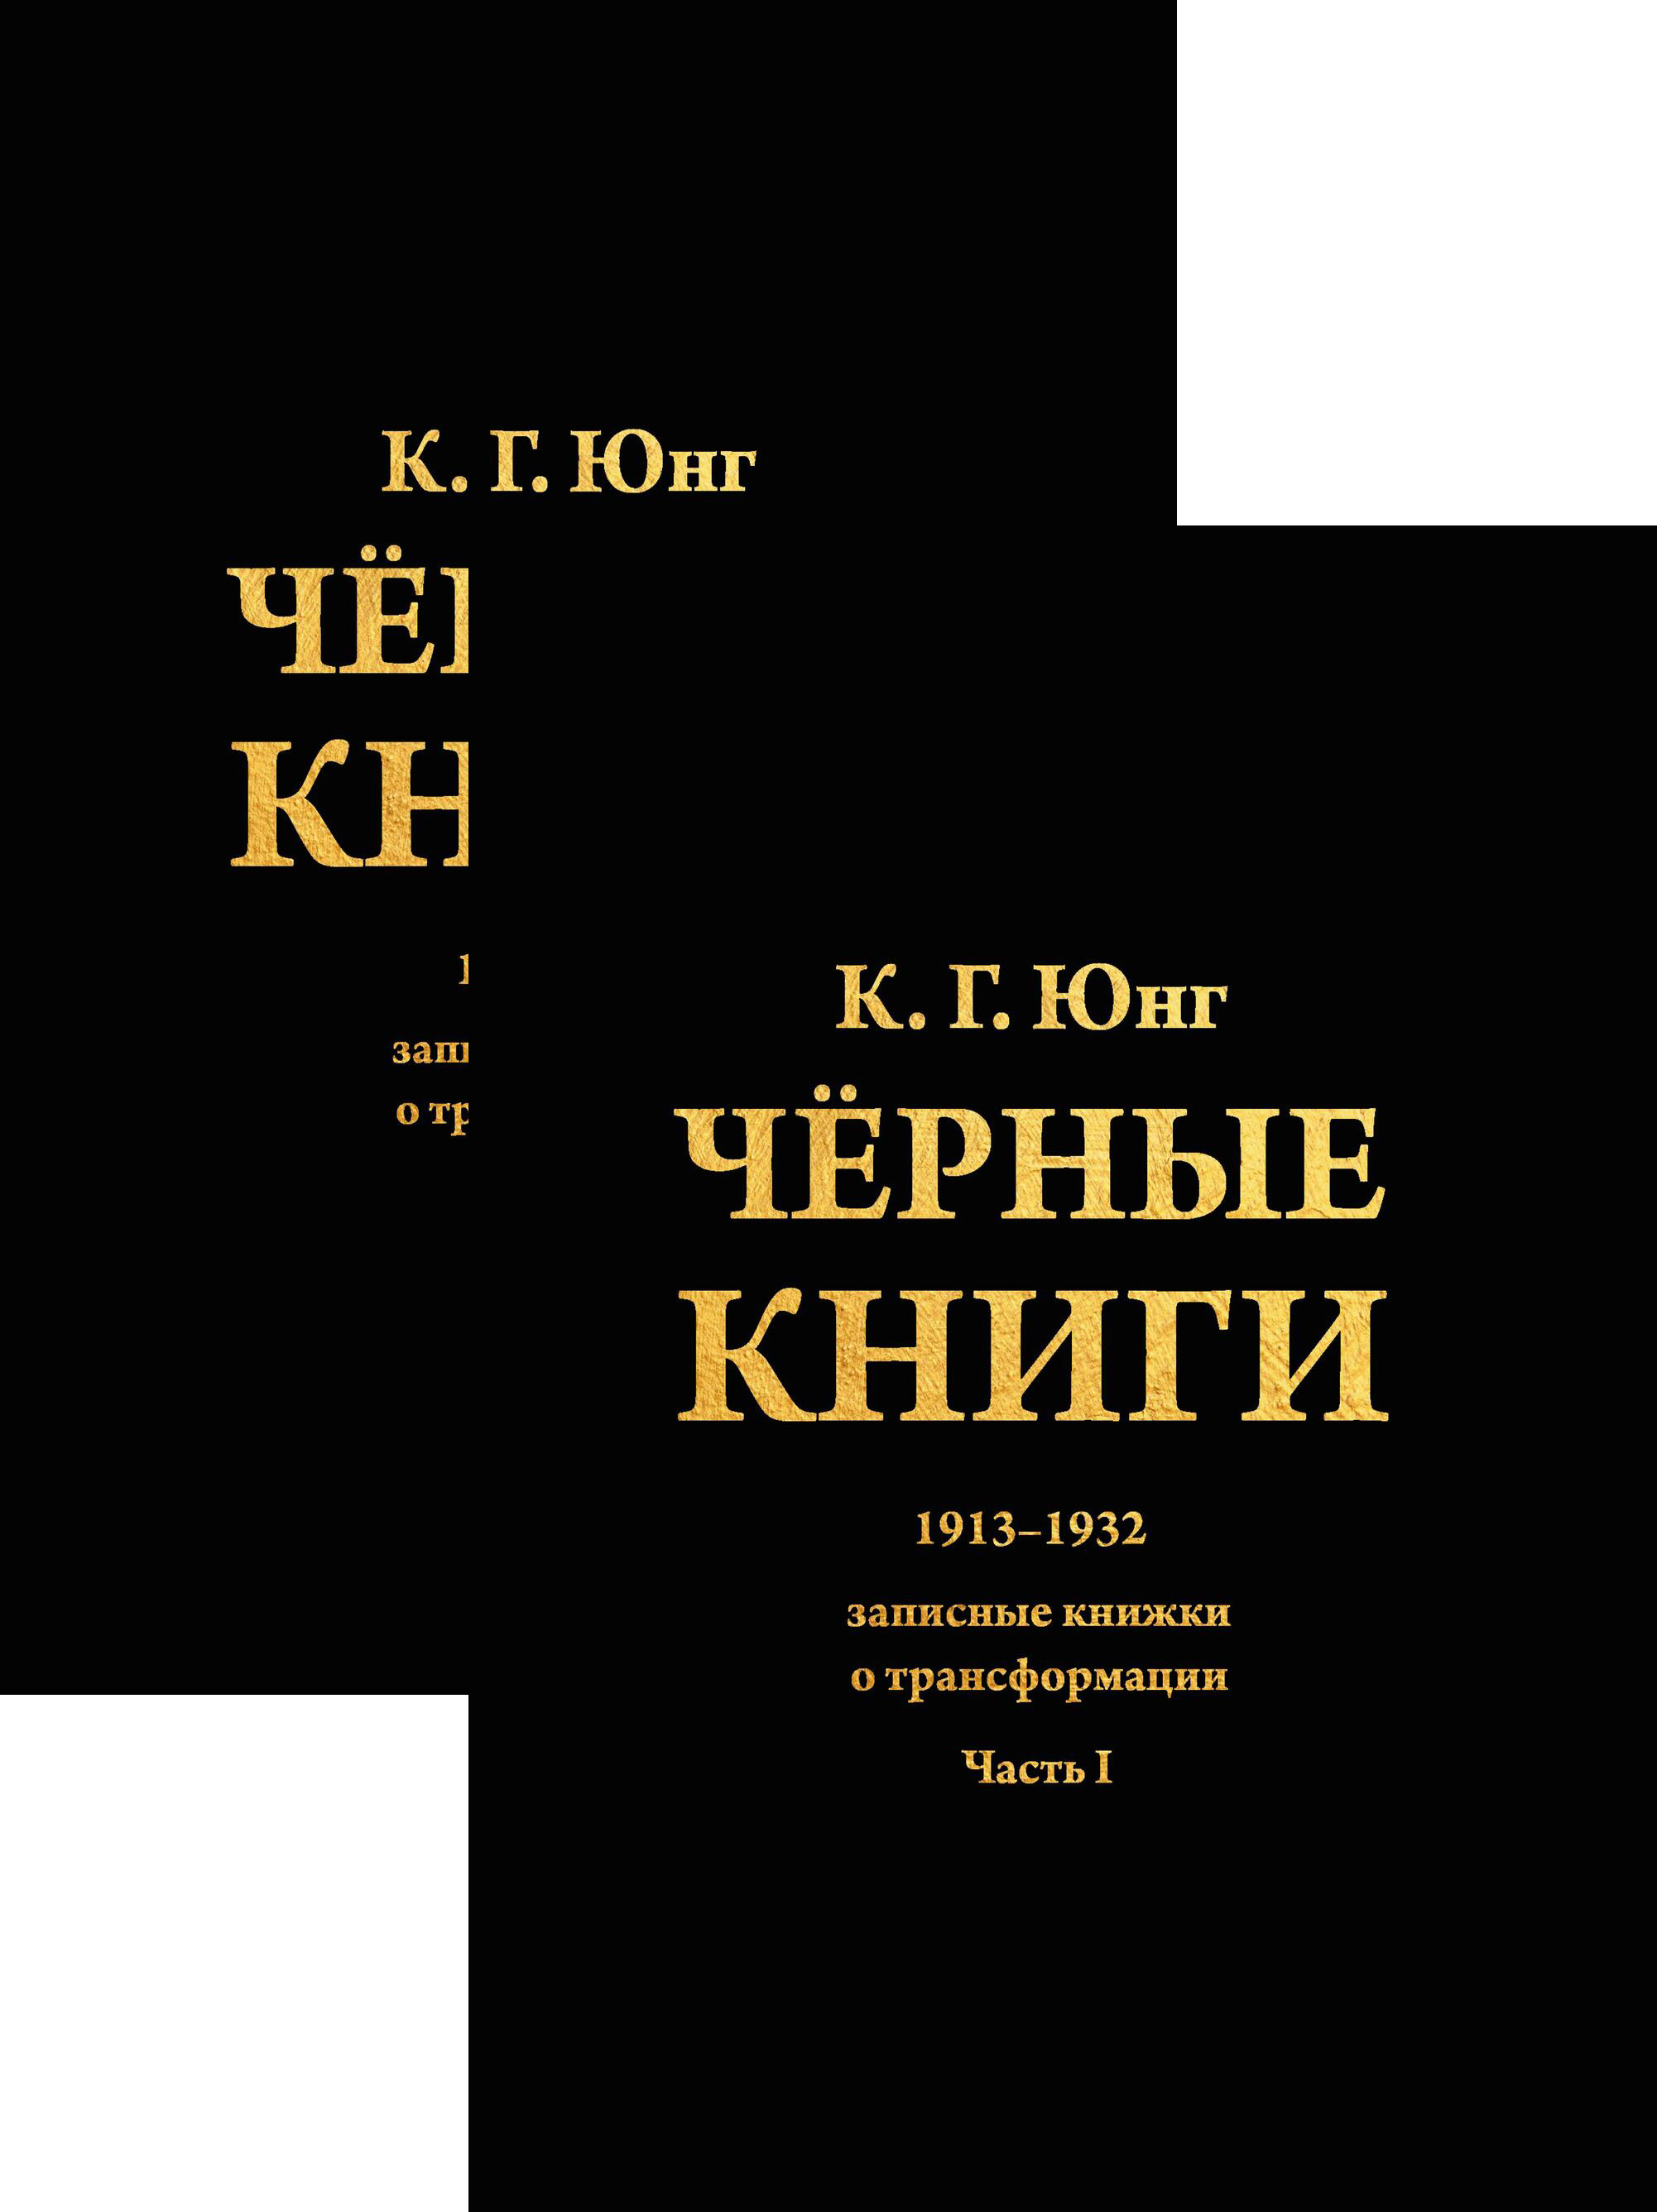 Юнг К.Г. - Черные книги. 1913-1932. ч1-2